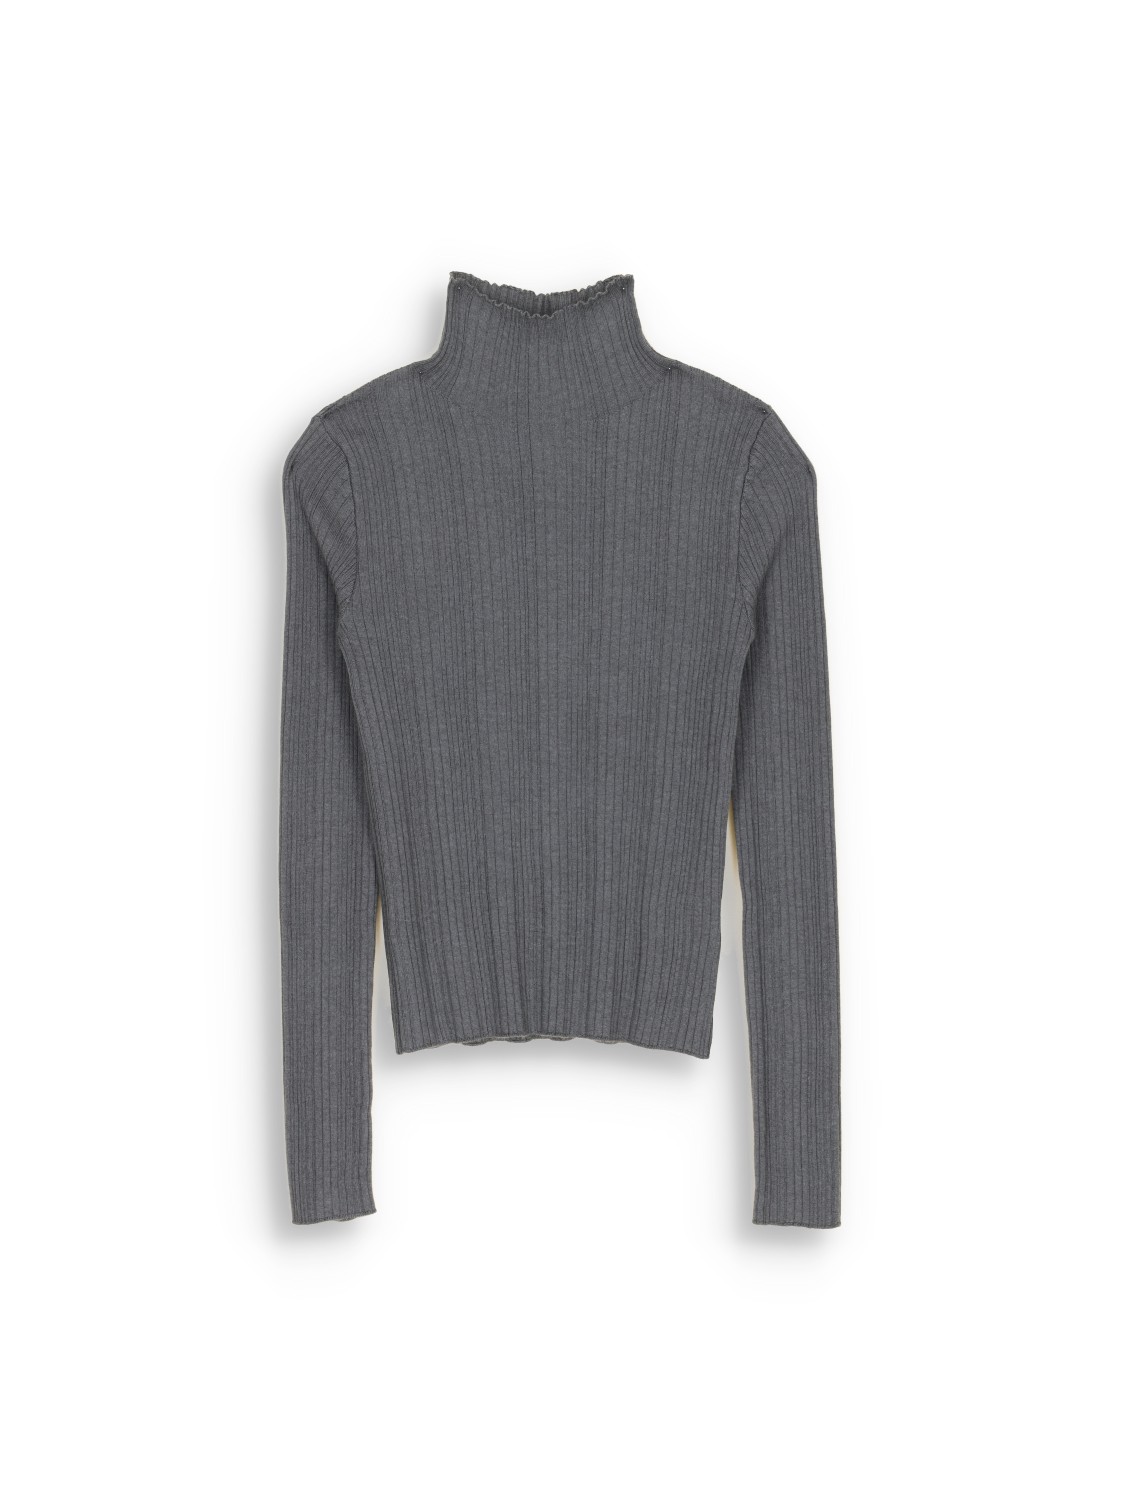 Iris von Arnim Cashmere Silk Sweater - Ripp-Pullover aus Kaschmir und Seide   grau L